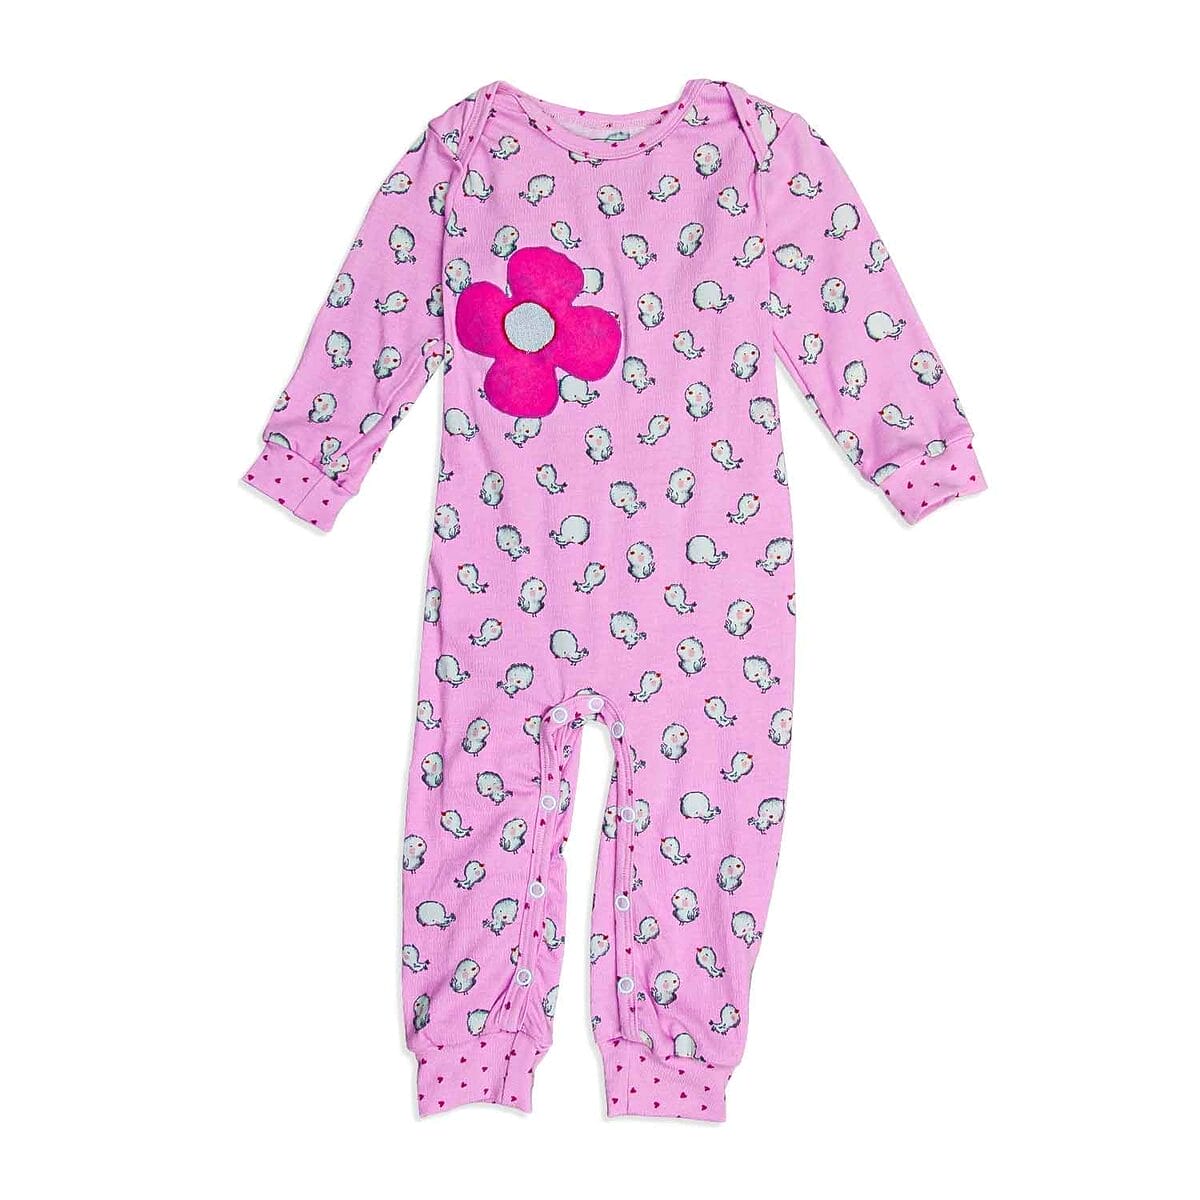 Zuckerrosa Baby-Schlafanzug aus Bio-Baumwolle mit süßem Vogeldruck, komfortabel und stilvoll für ruhige Nächte.